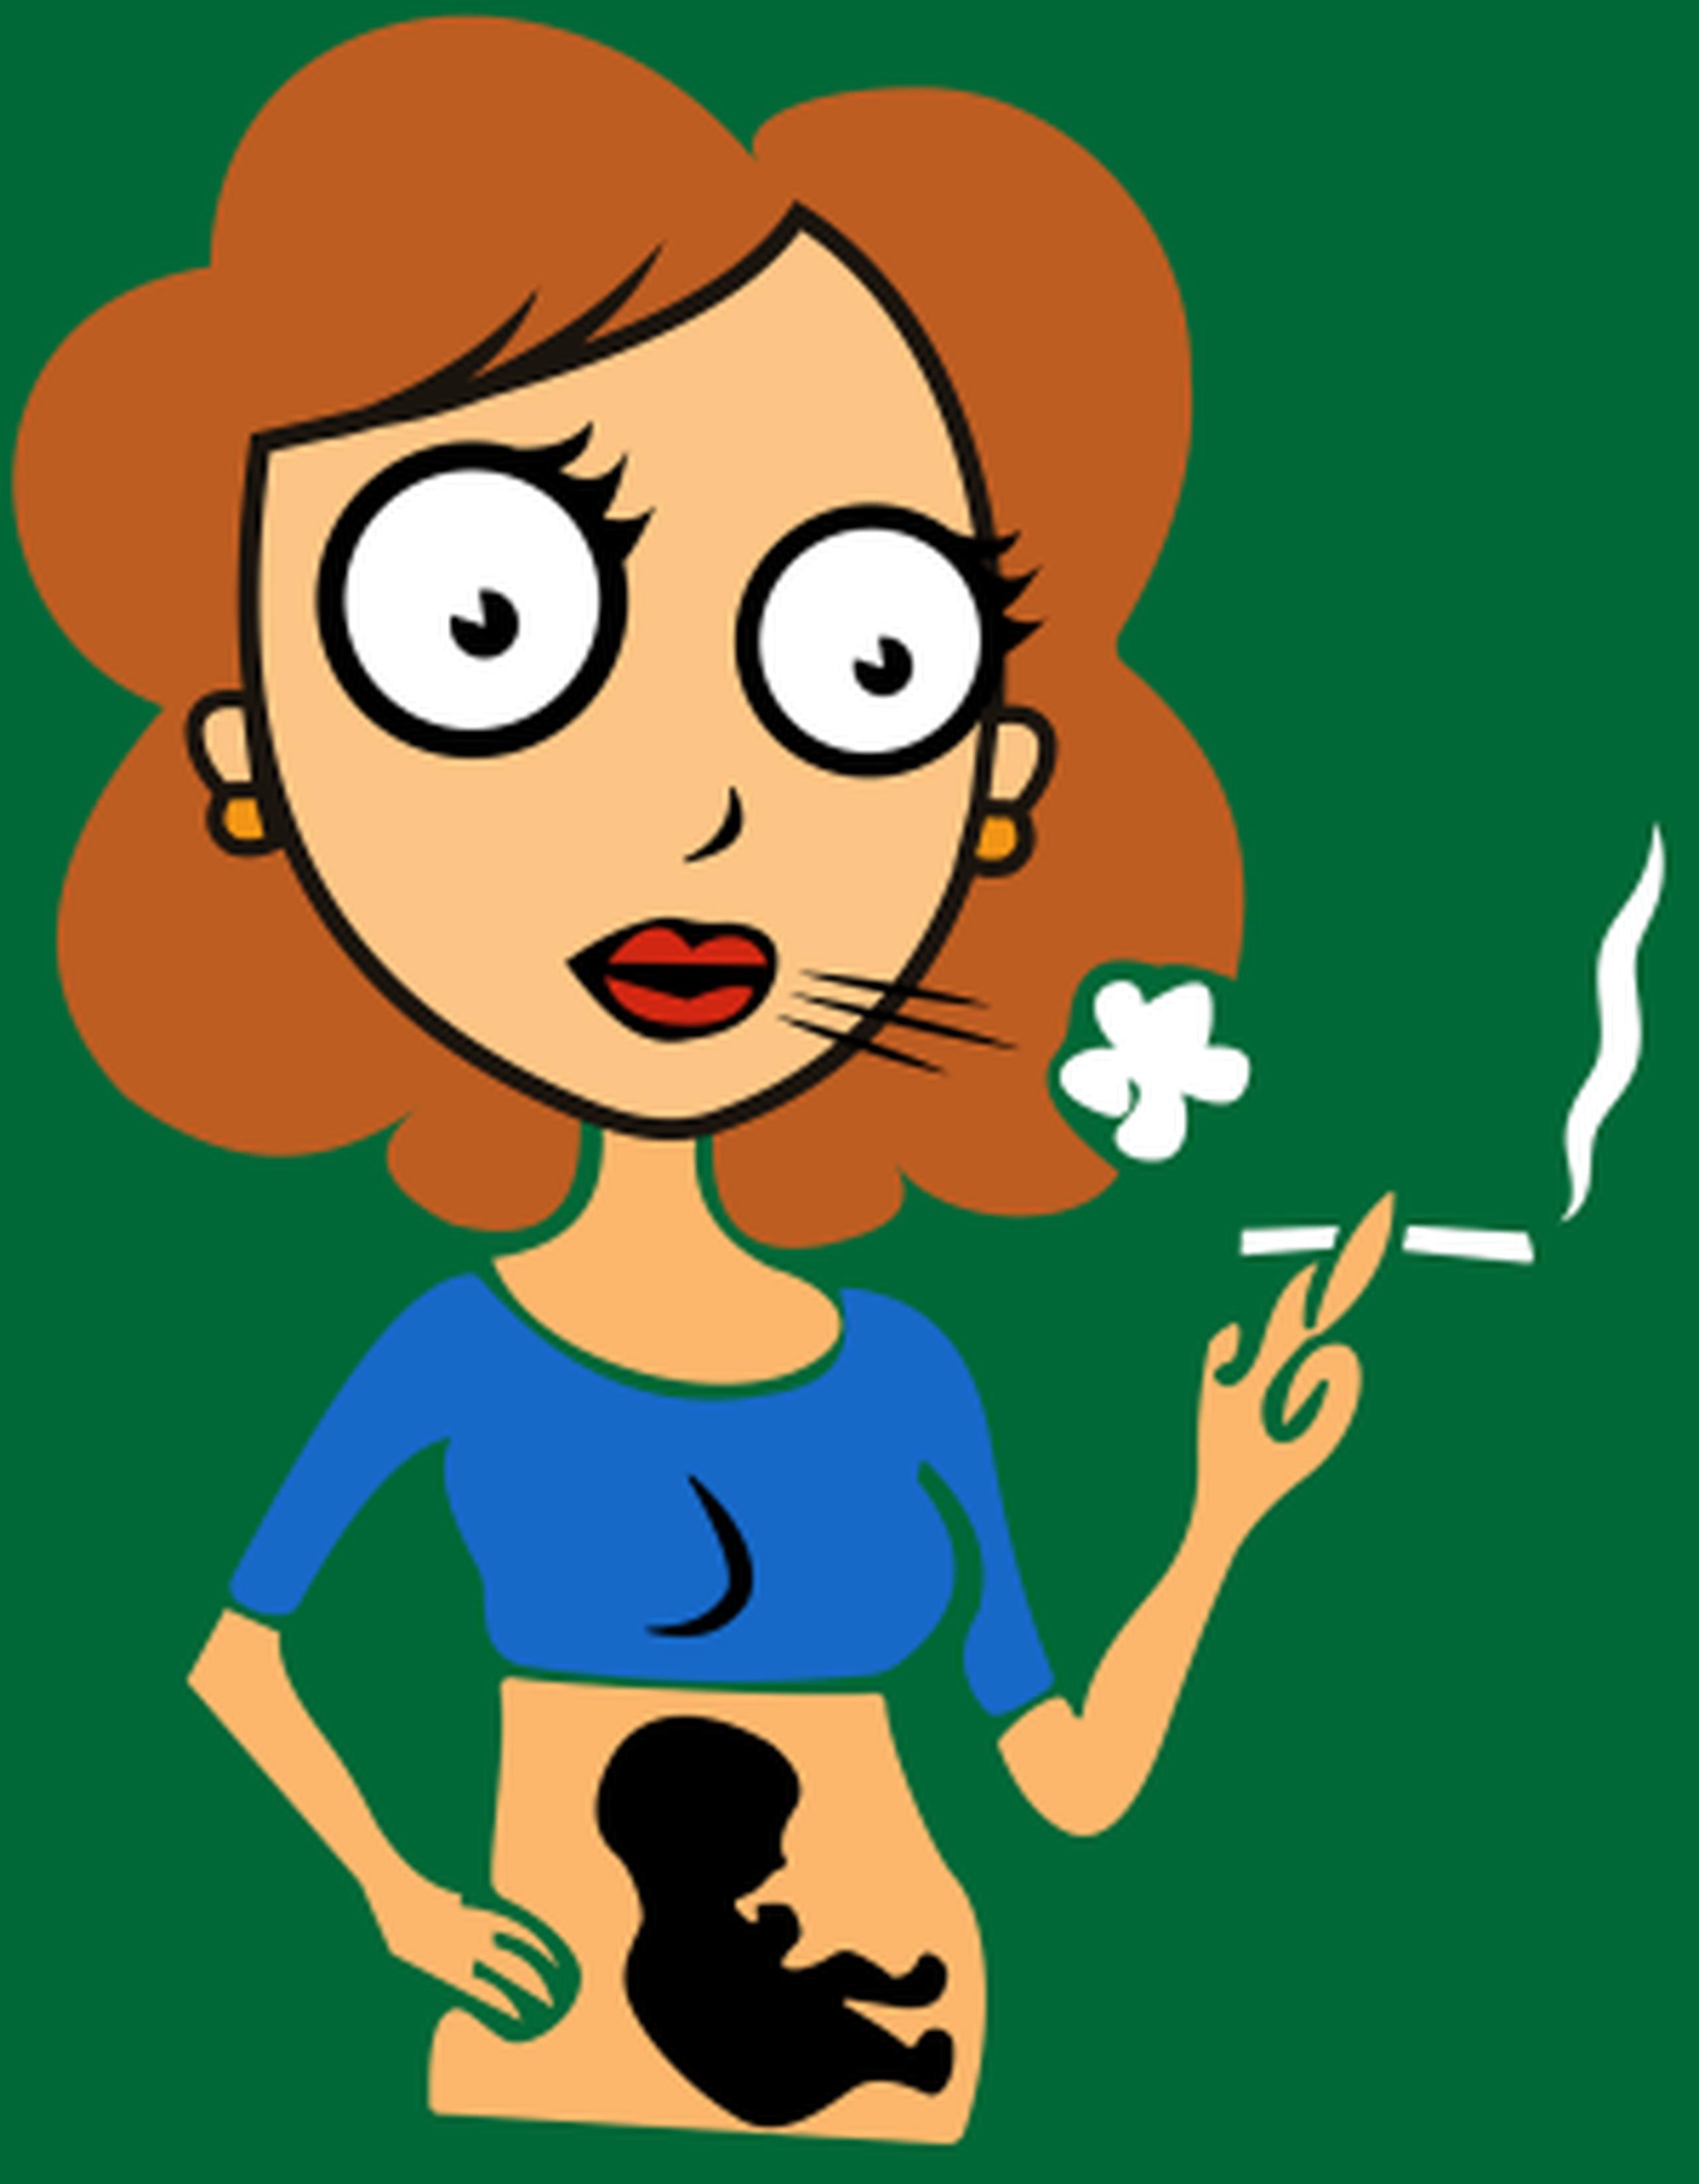 El tabaquismo durante el embarazo está relacionado a una serie de efectos secundarios y problemas de salud en el bebé, que en algunos casos puede ser fatal. (Suministrada)